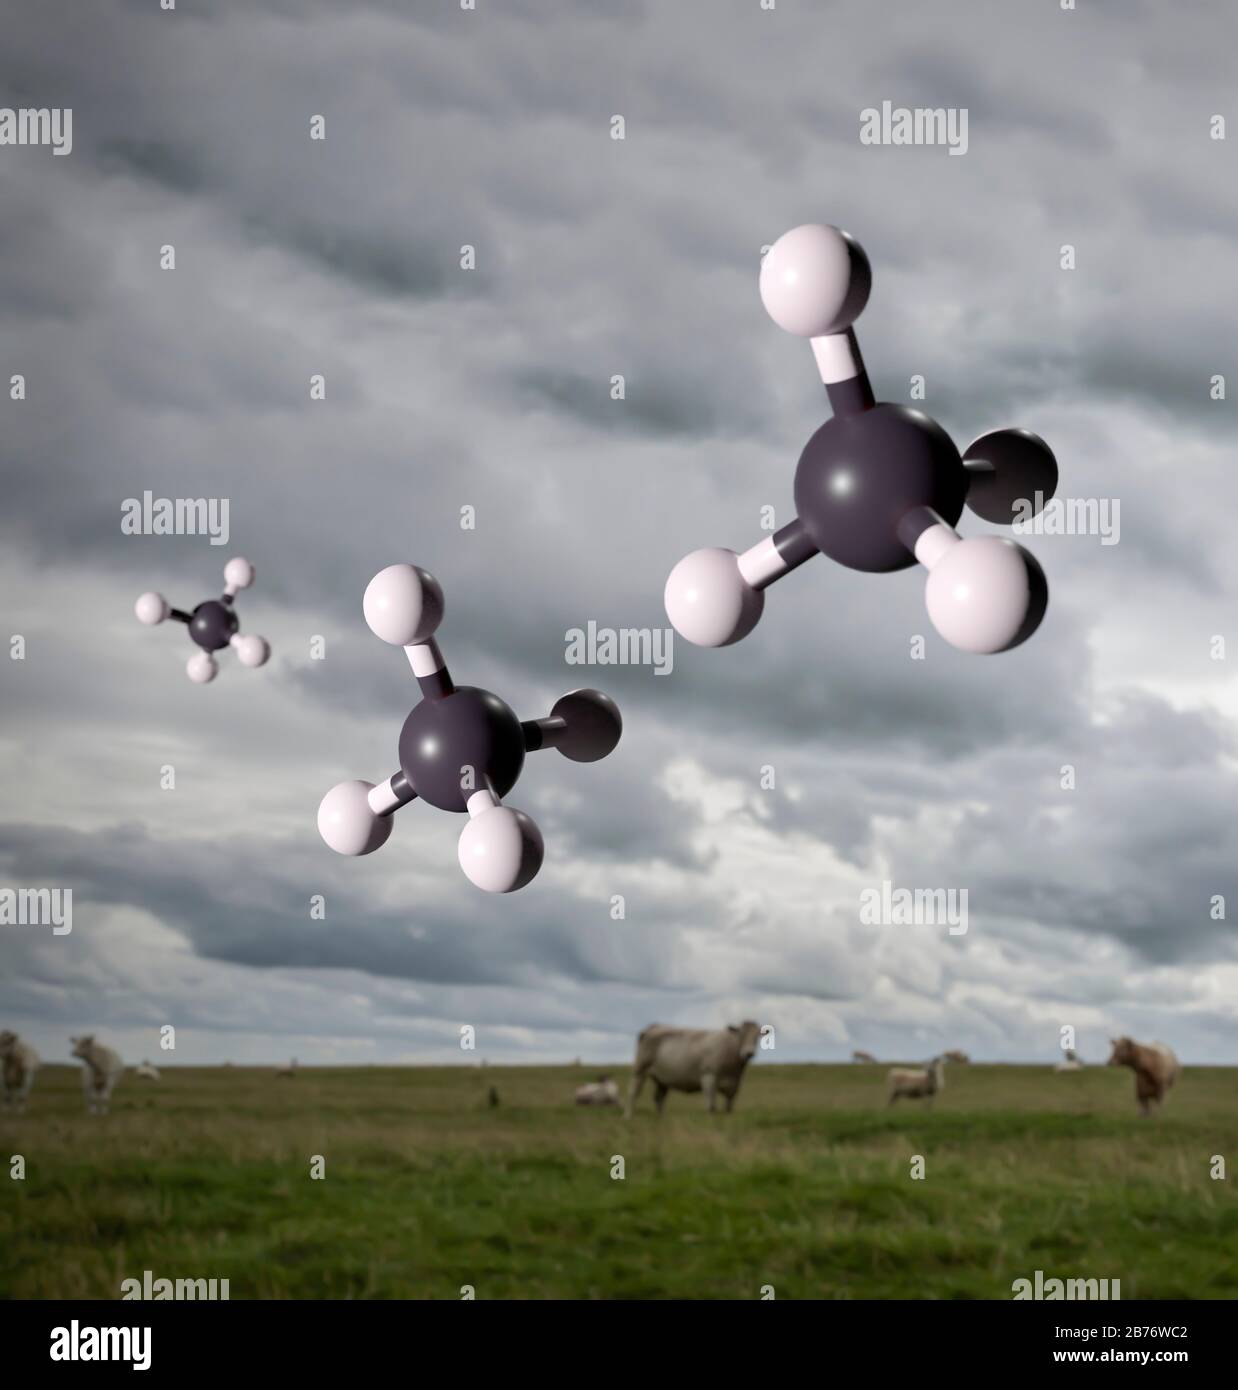 Modelli molecolari di gas metano con sfondo di bovini e ovini. I ruminanti sono una fonte importante di emissioni di metano. Anche se a livello globale viene emesso molto meno metano del biossido di carbonio, ha un potenziale di riscaldamento globale di circa 25 volte quello del C2O, e così è un gas serra molto significativo. Foto Stock